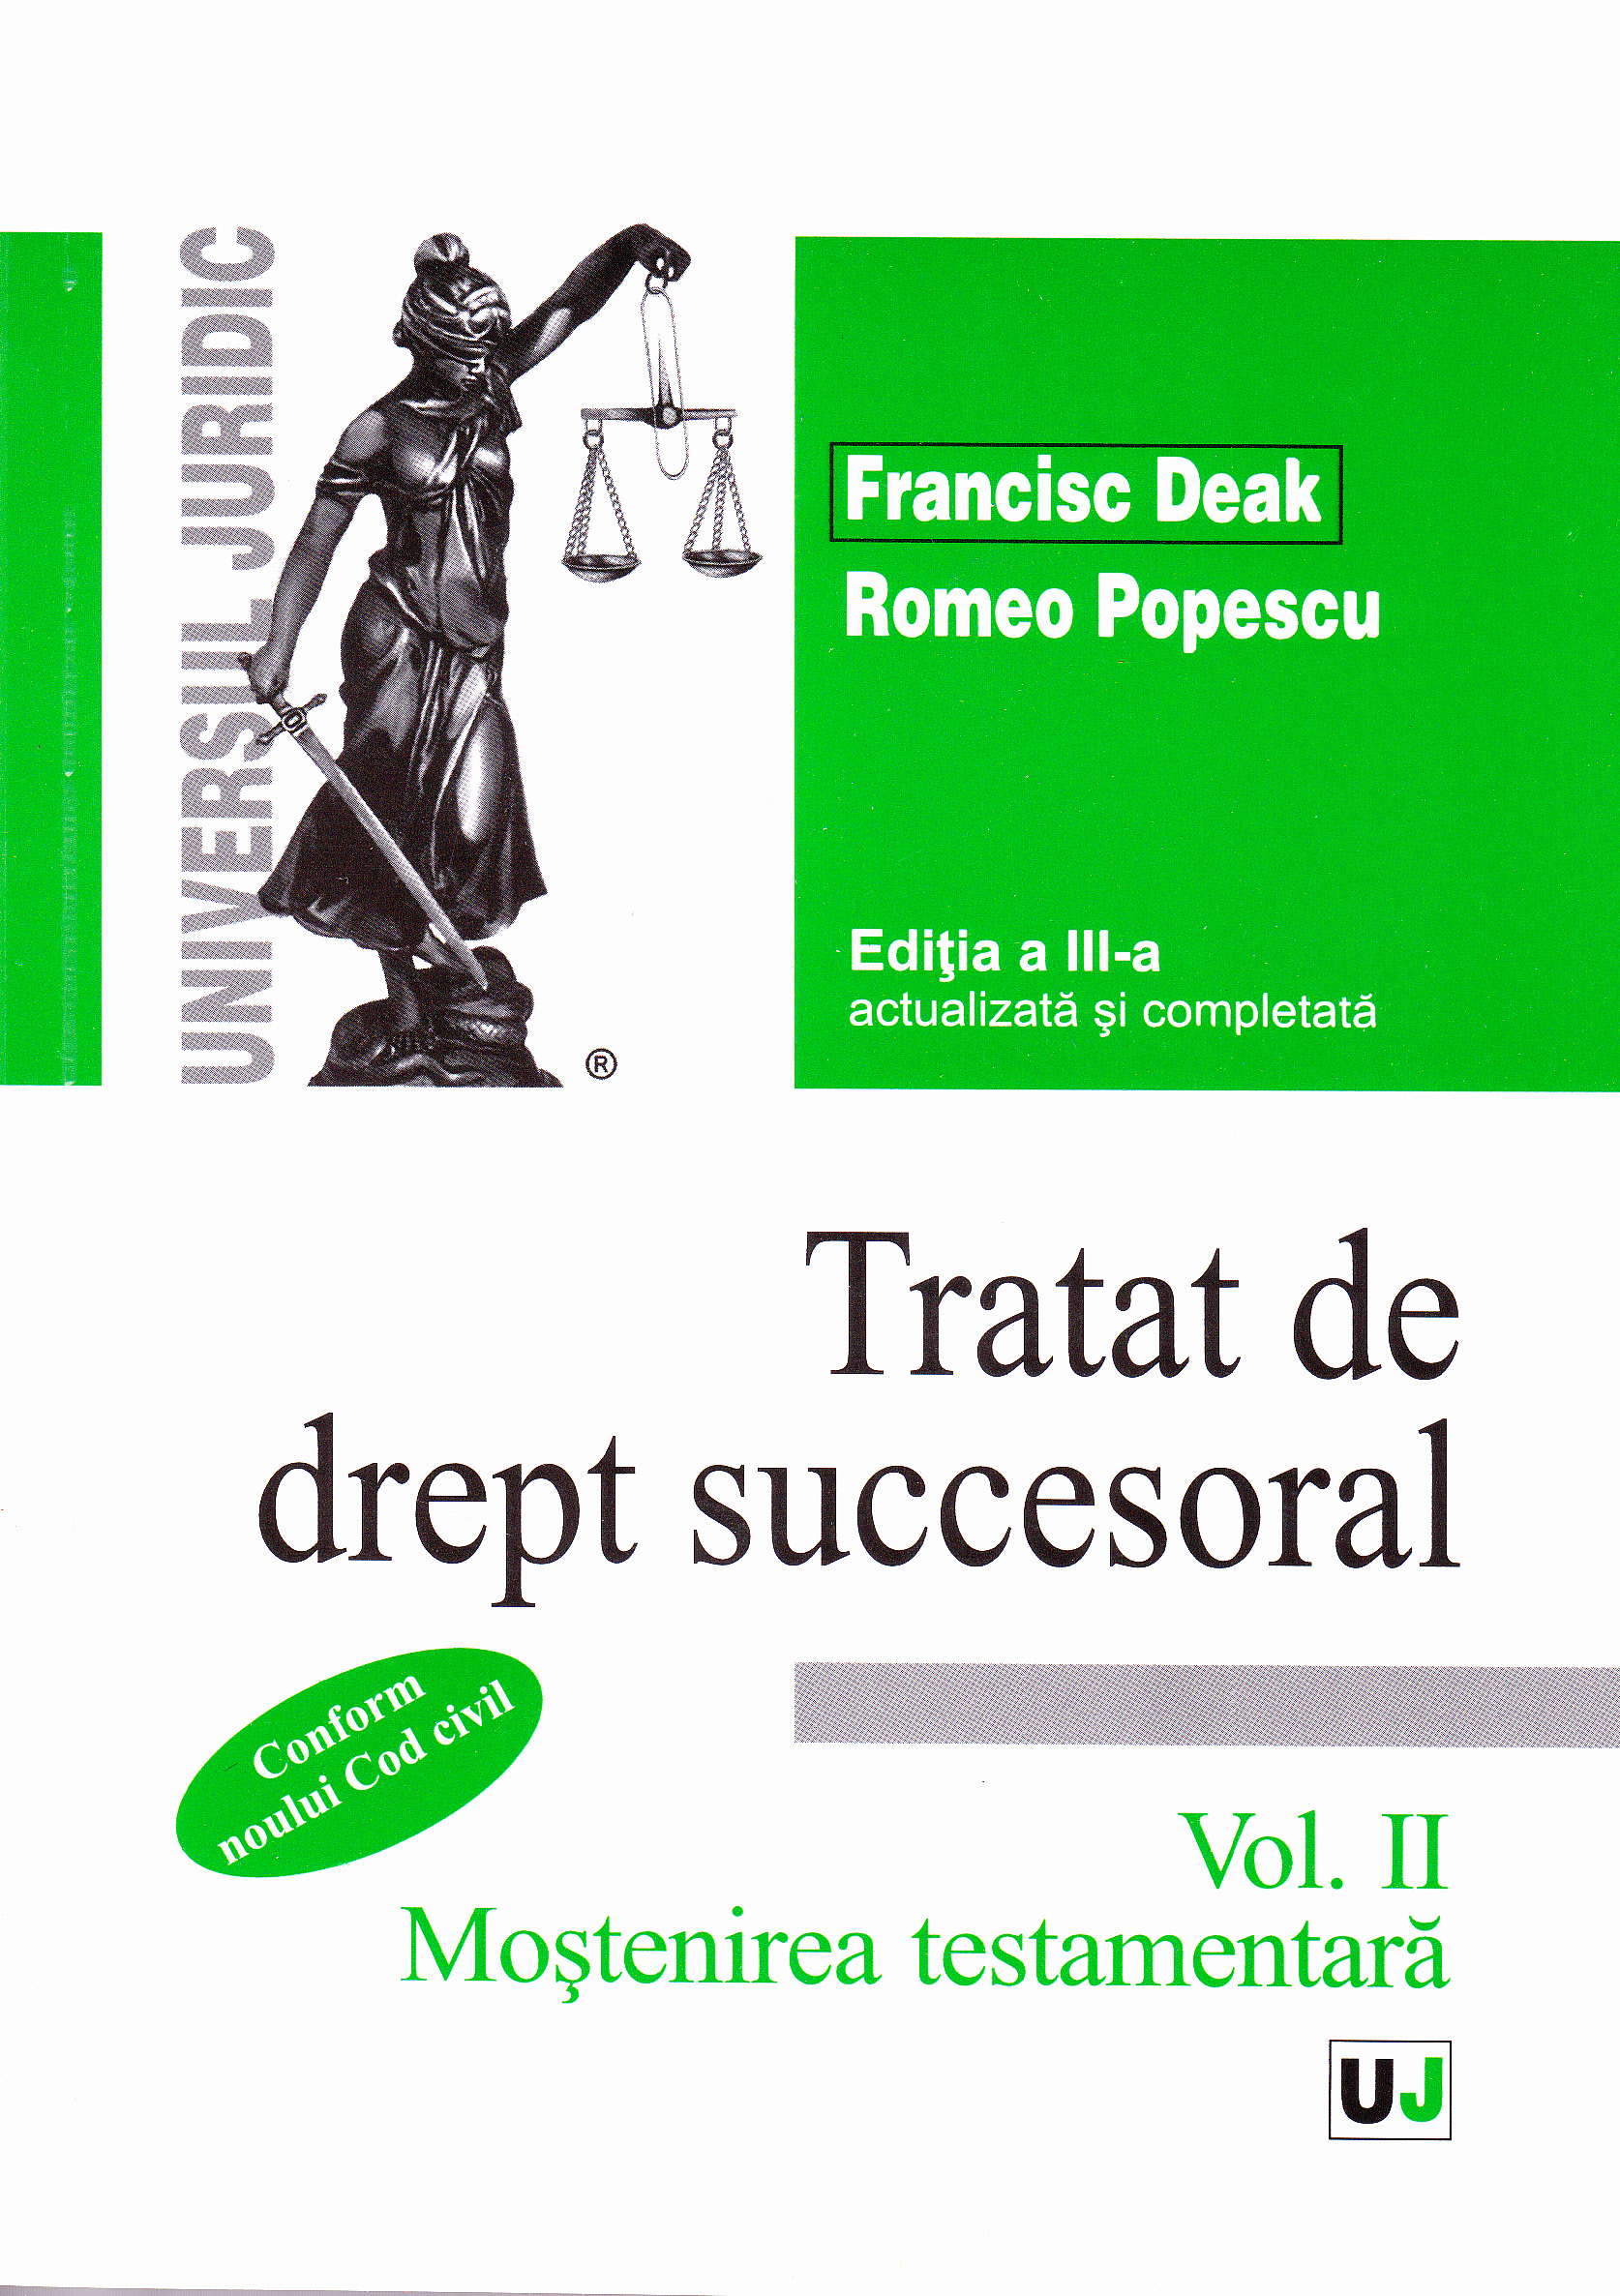 Tratat de drept succesoral ed.3 vol.2: Mostenirea testamentara - Francisc Deak